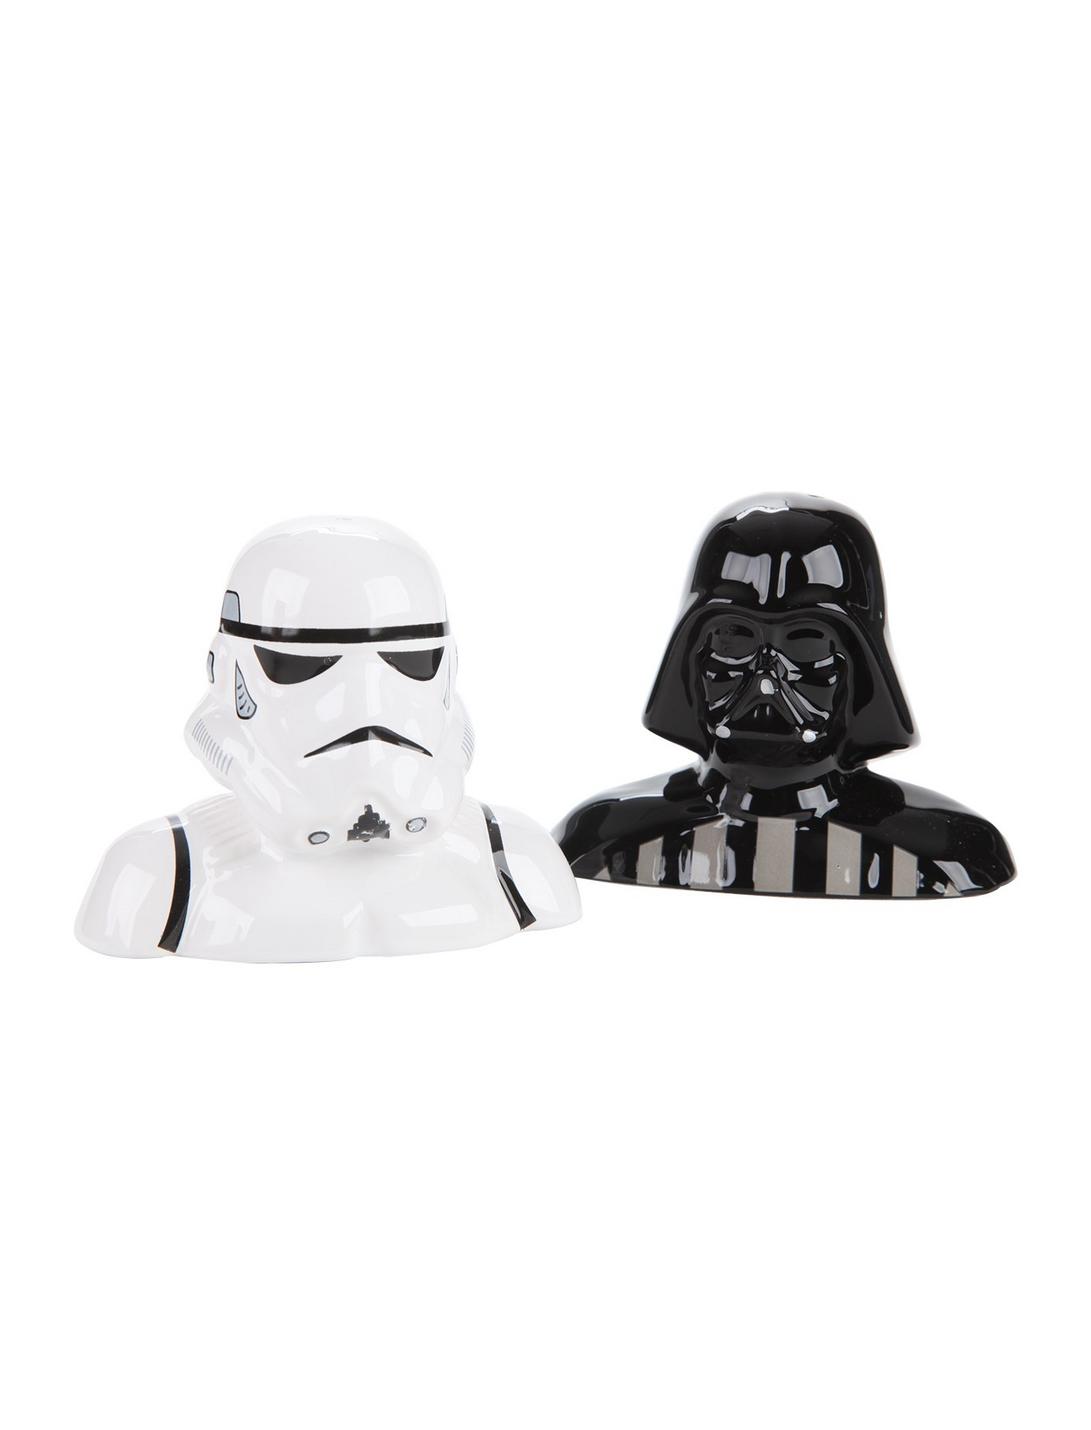 Star Wars Darth Vader & Stormtrooper Salt & Pepper Shaker Set, , hi-res